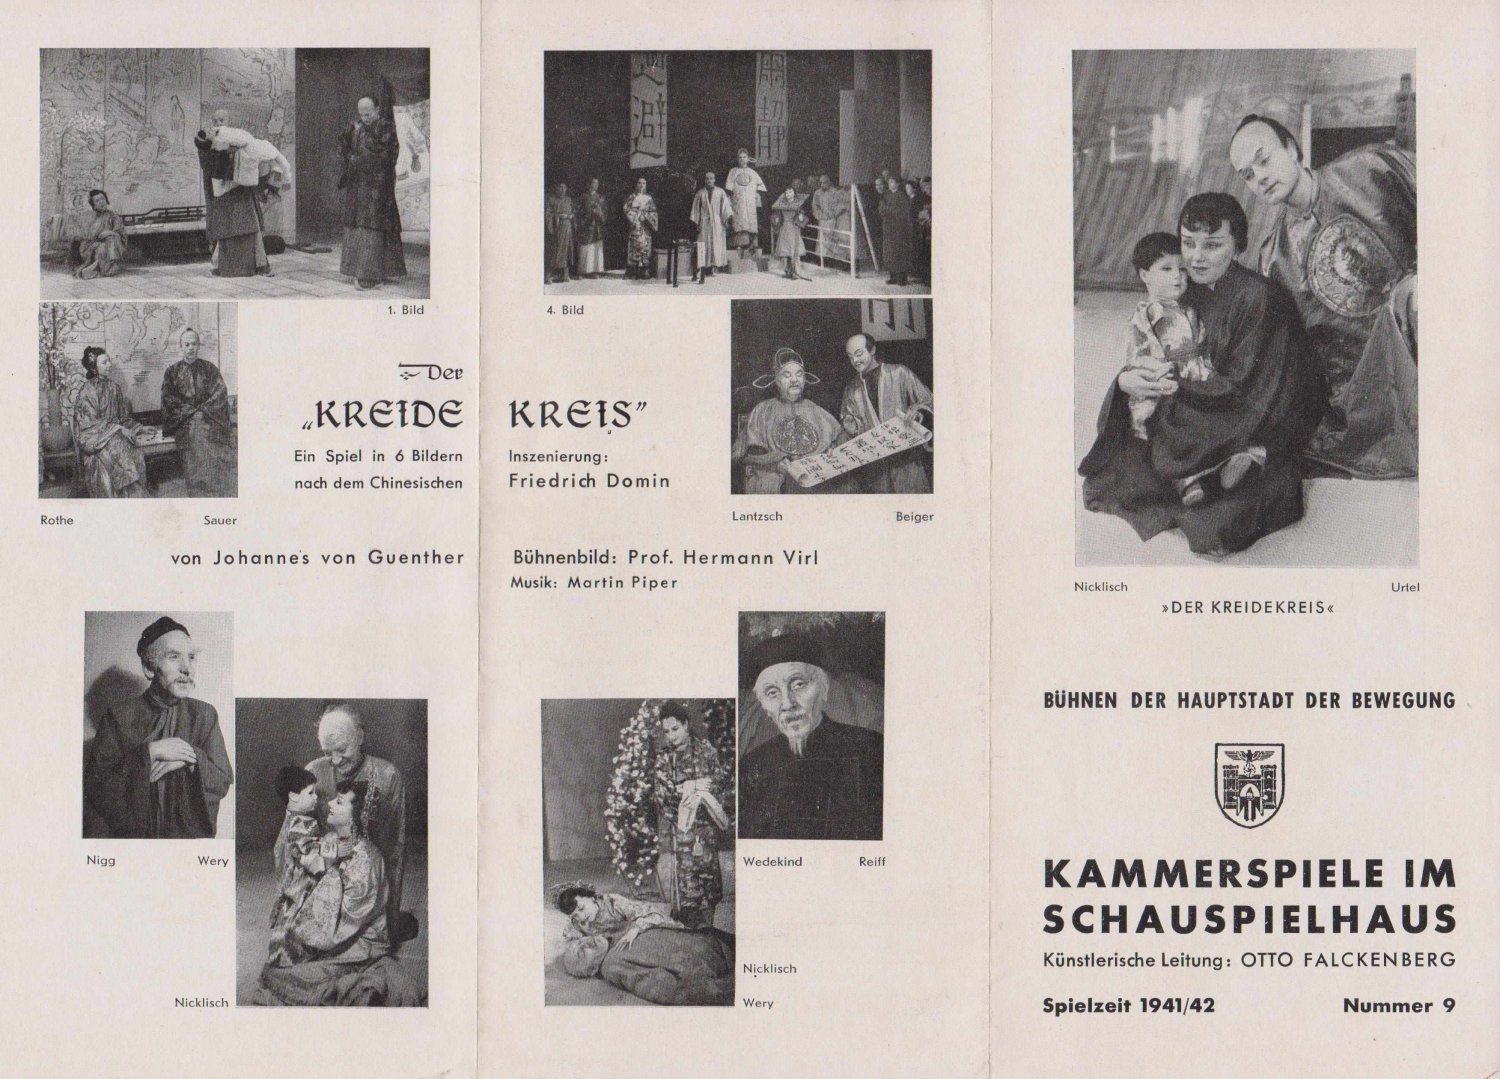 Kammerspiele im Schauspielhaus:  Johannes von Guenther, Der Kreidekreis. Ein Spiel in 6 Bildern nach dem Chinesischen. 